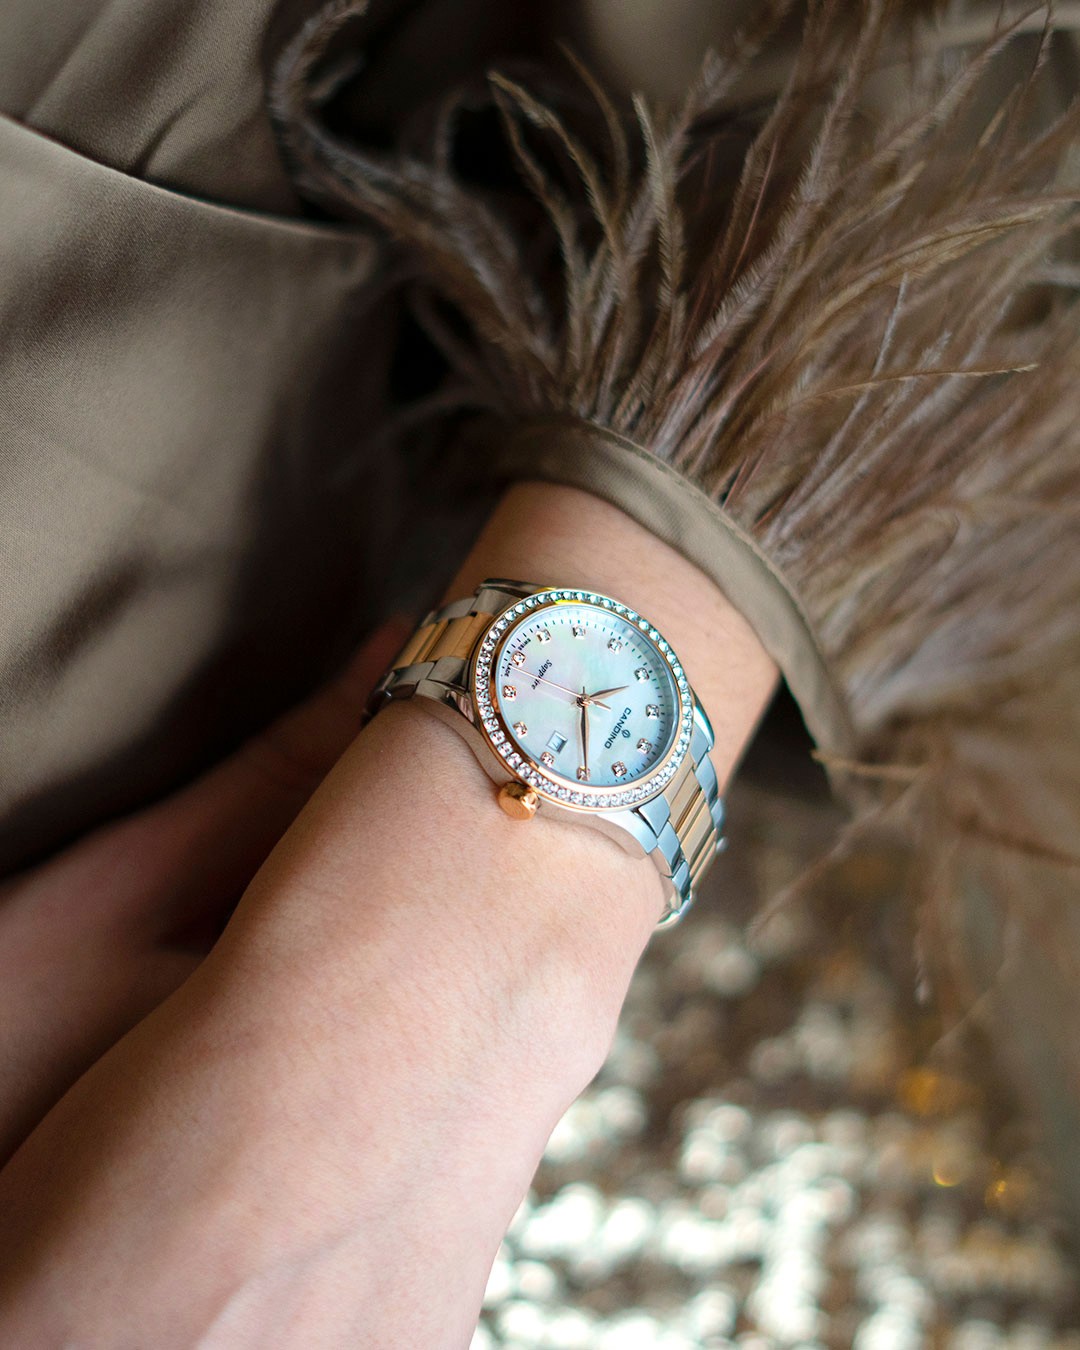 CANDINO  Женские швейцарские часы, кварцевый механизм, сталь, 33 мм